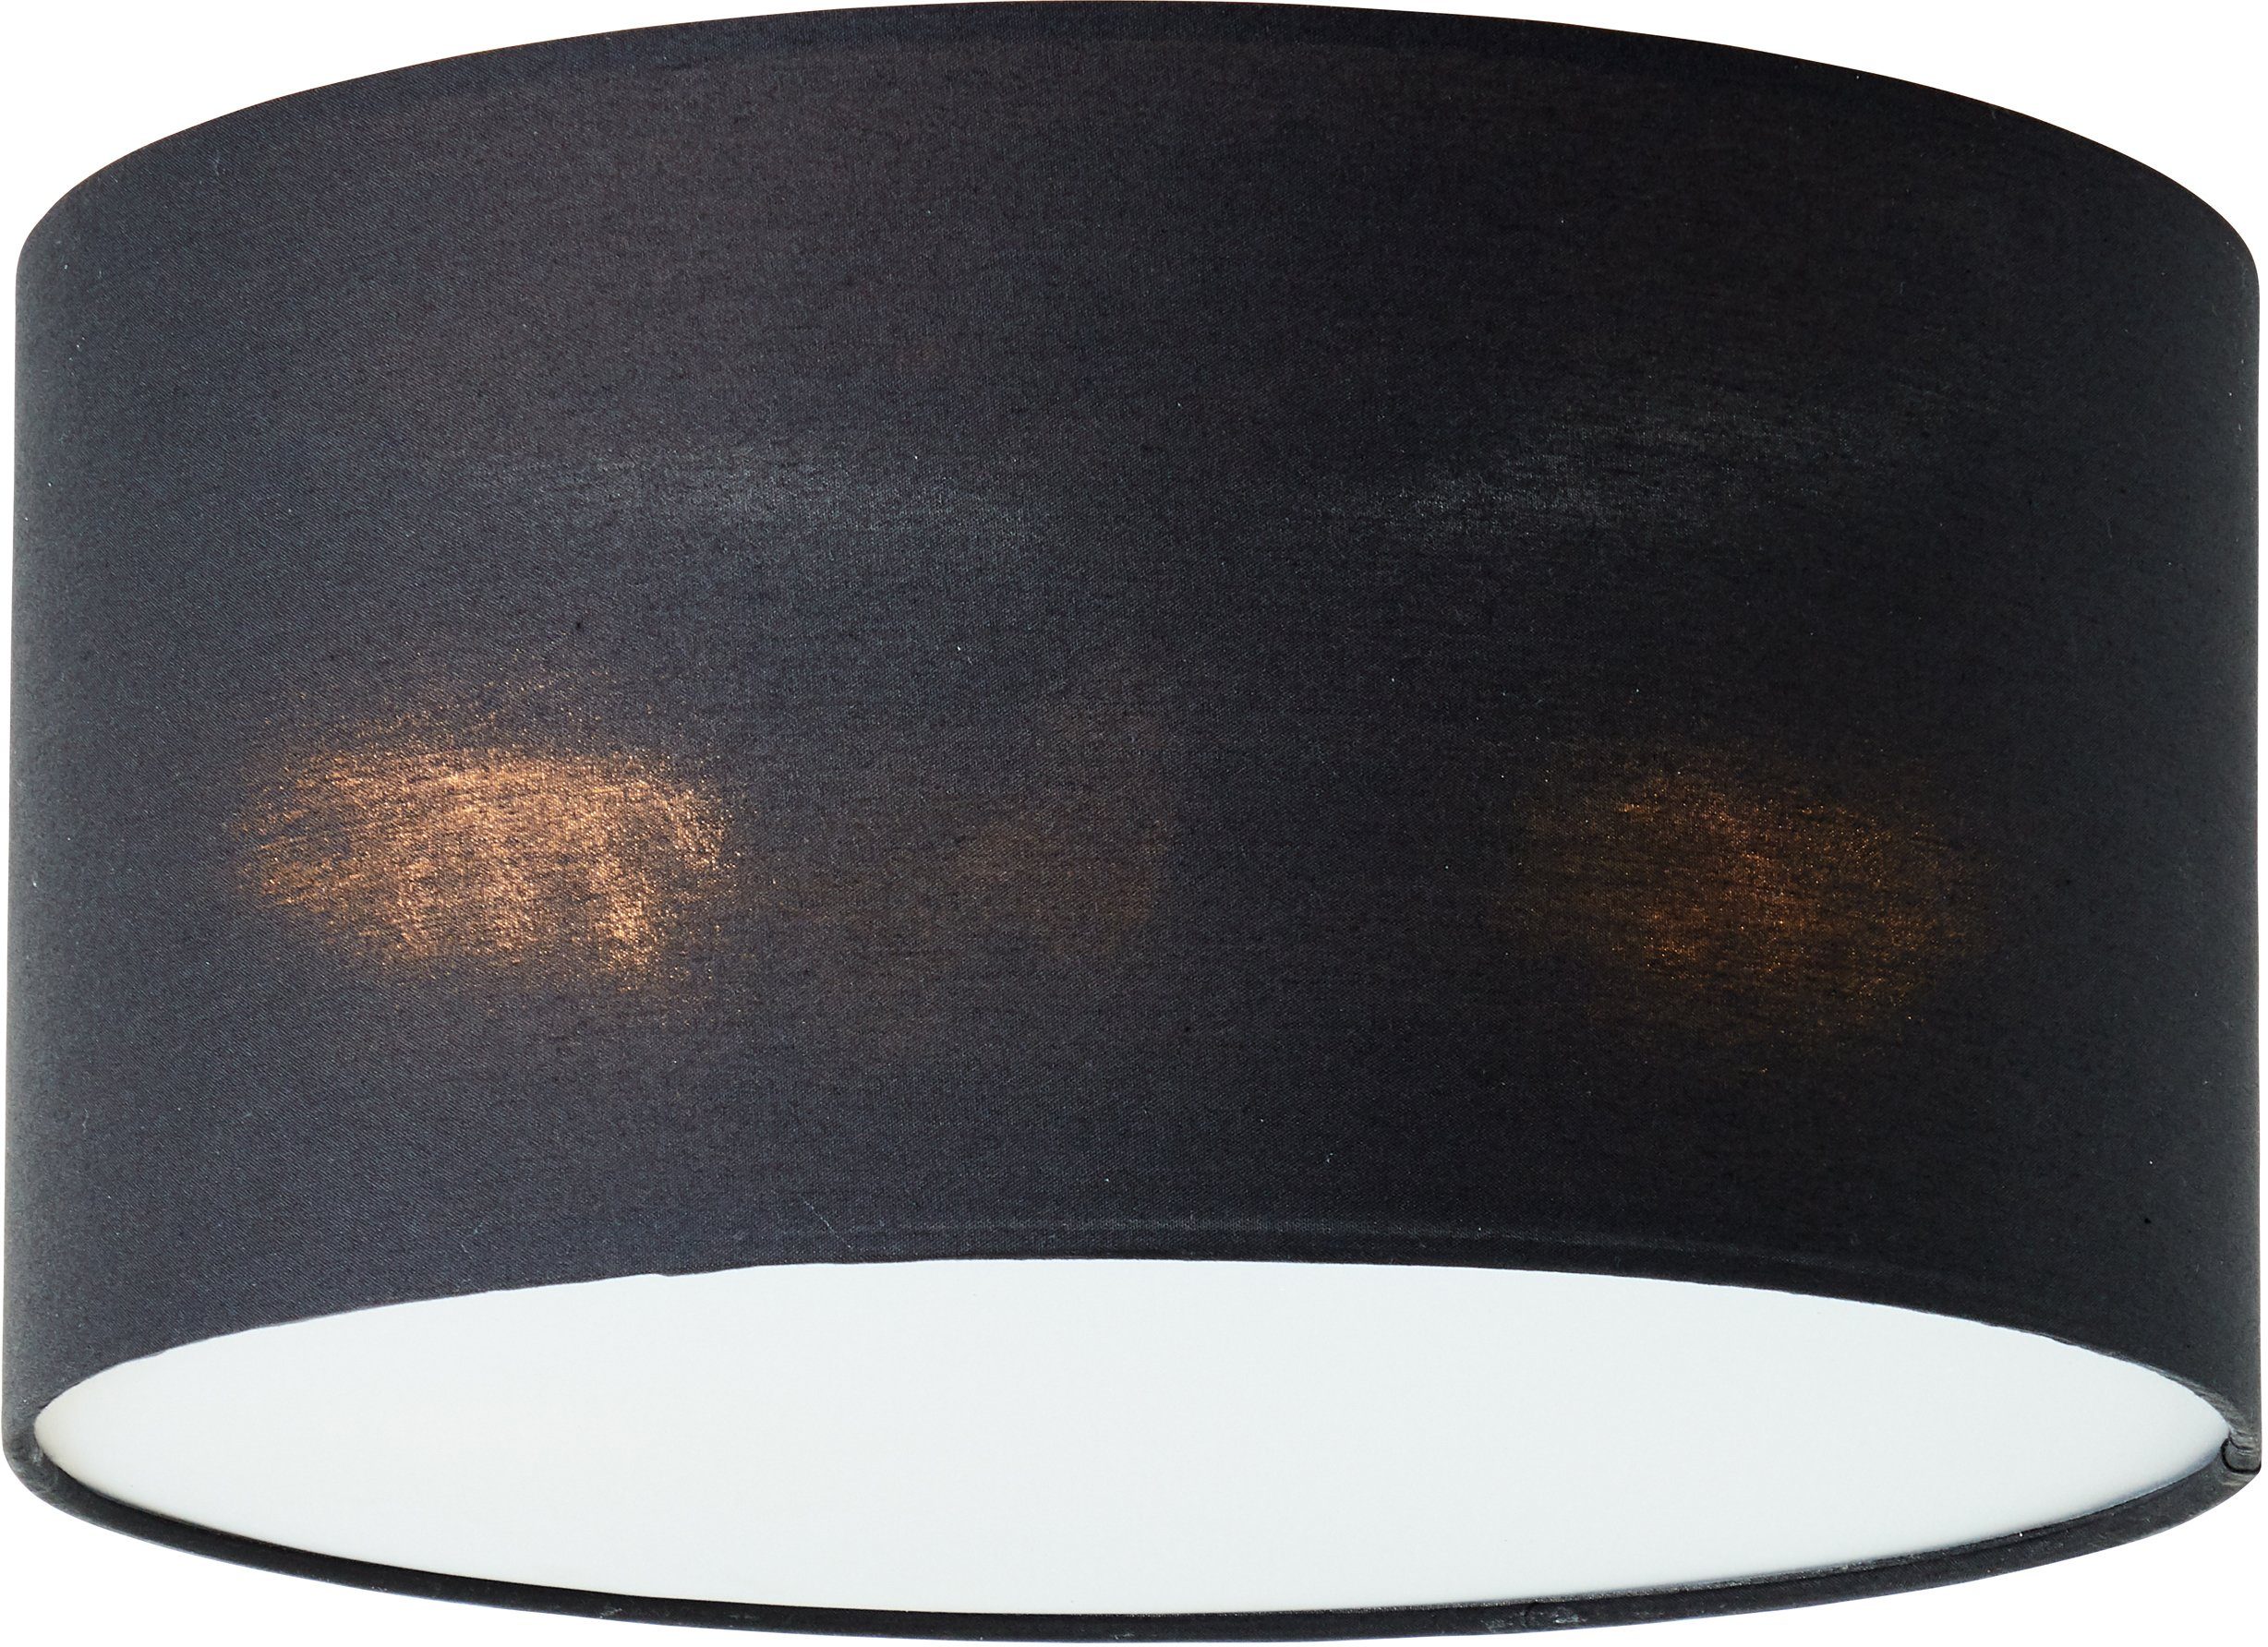 Places of Style Deckenleuchte Deckenlampe mit 30cm Textilschirm ohne Leuchtmittel, Elijah, schwarz Ø